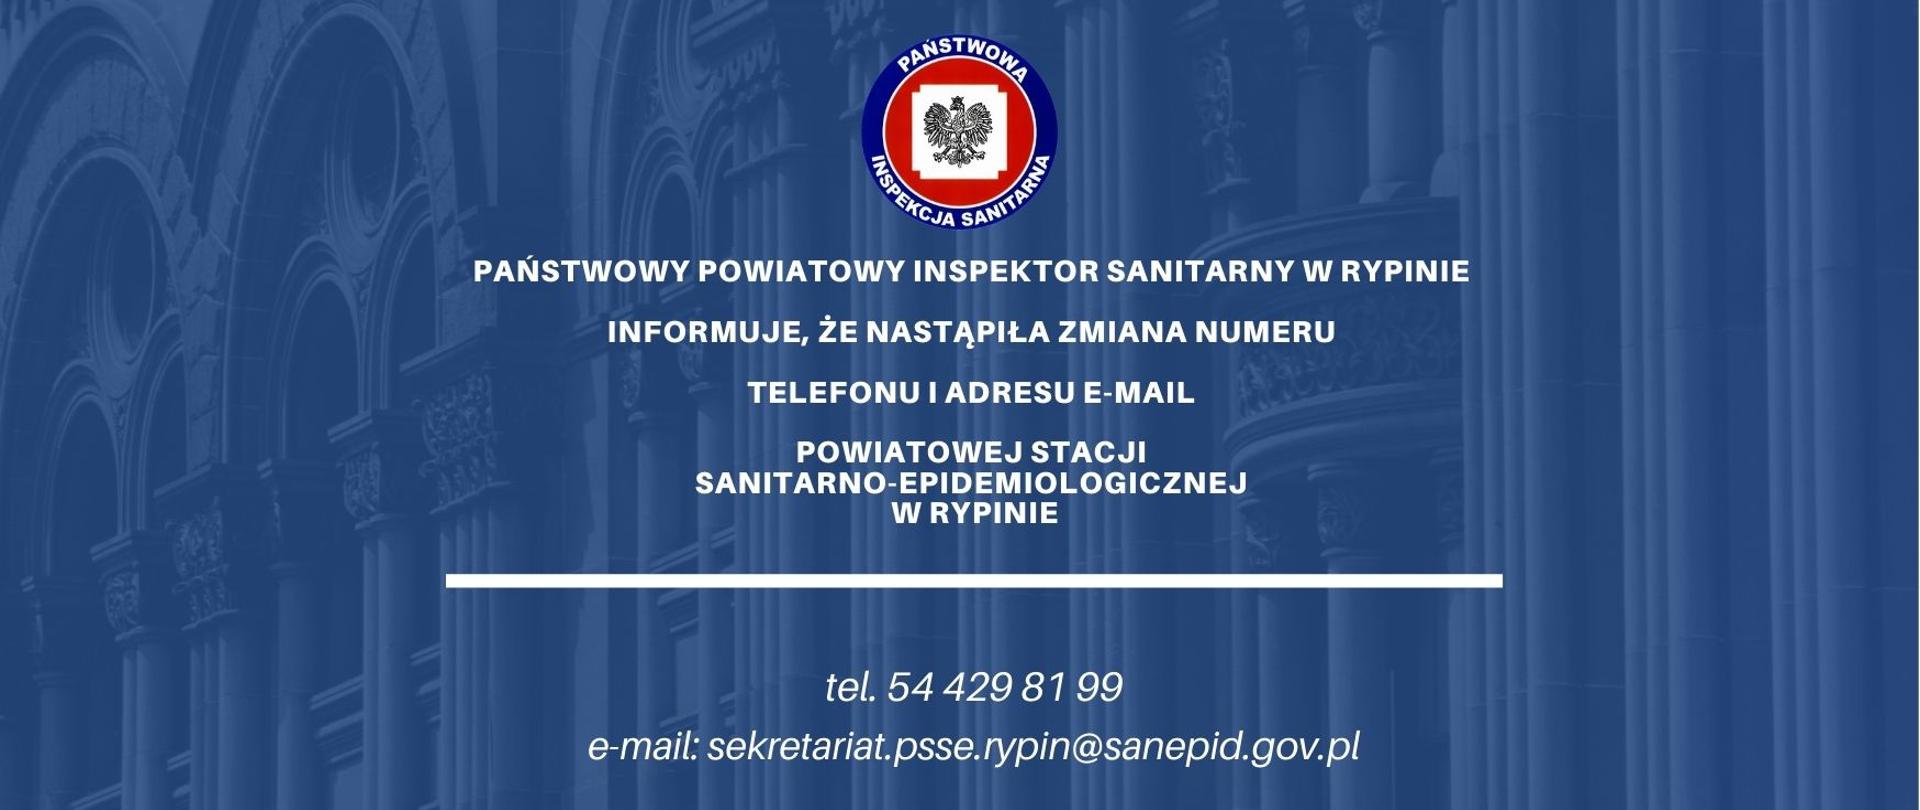 Państwowy Powiatowy Inspektor Sanitarny w Rypinie informuje